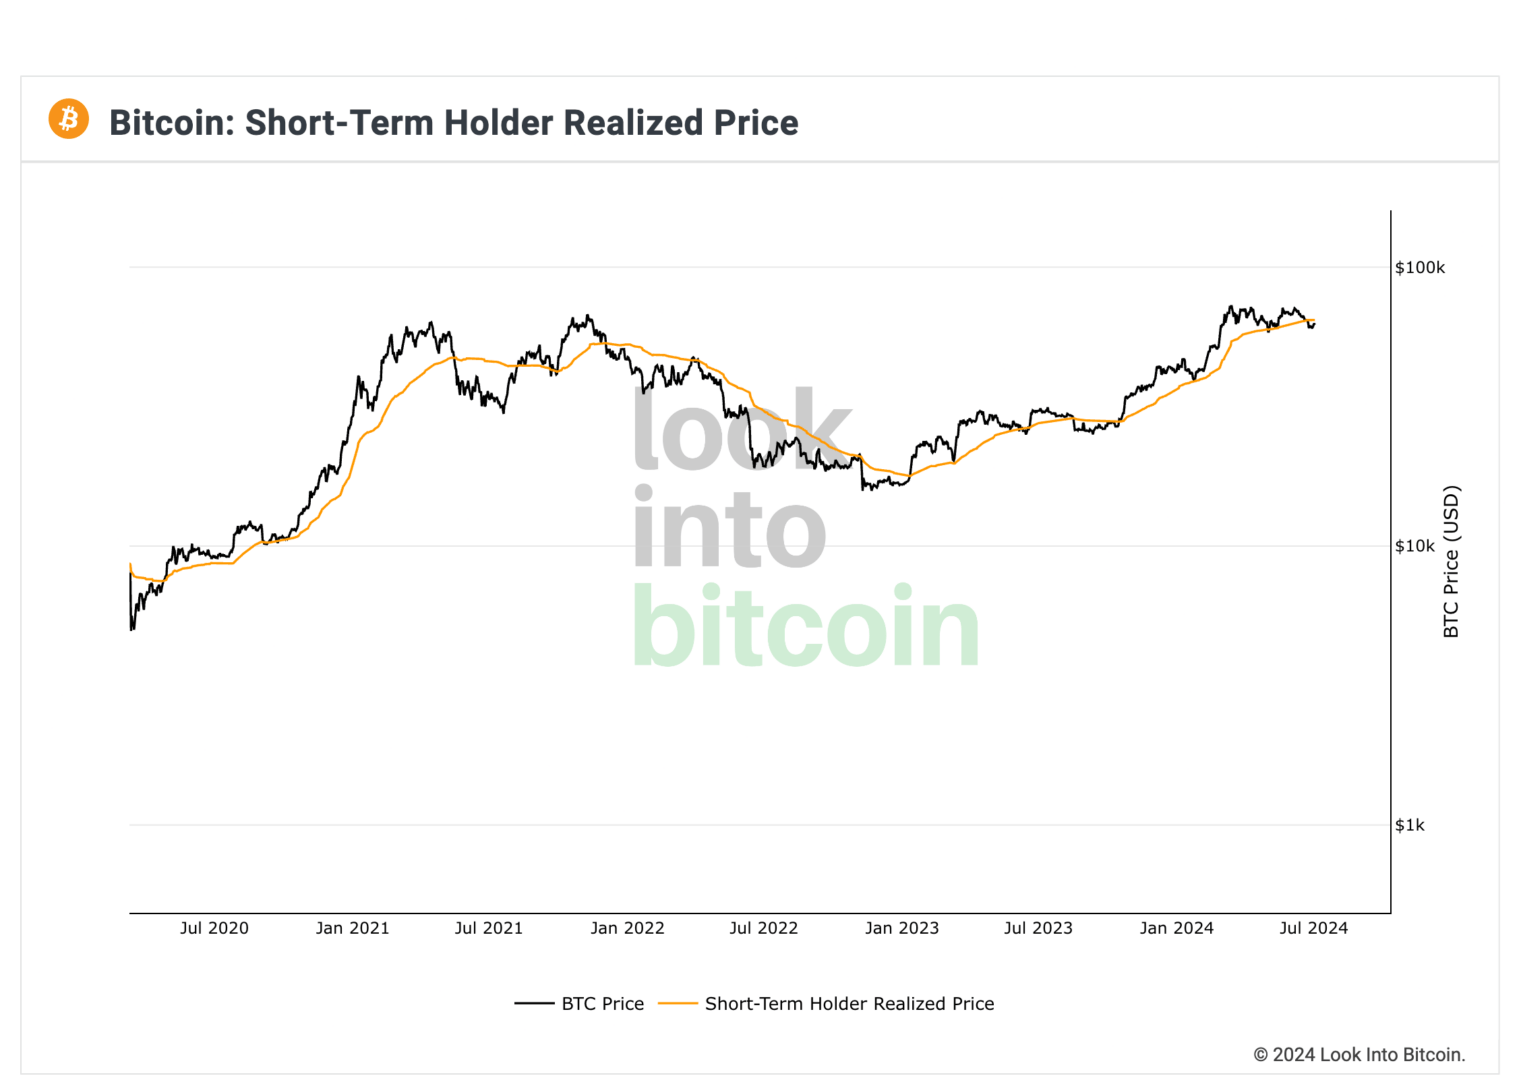 Le cours du Bitcoin a chuté sous le prix réalisé des détenteurs à court terme (STH). 